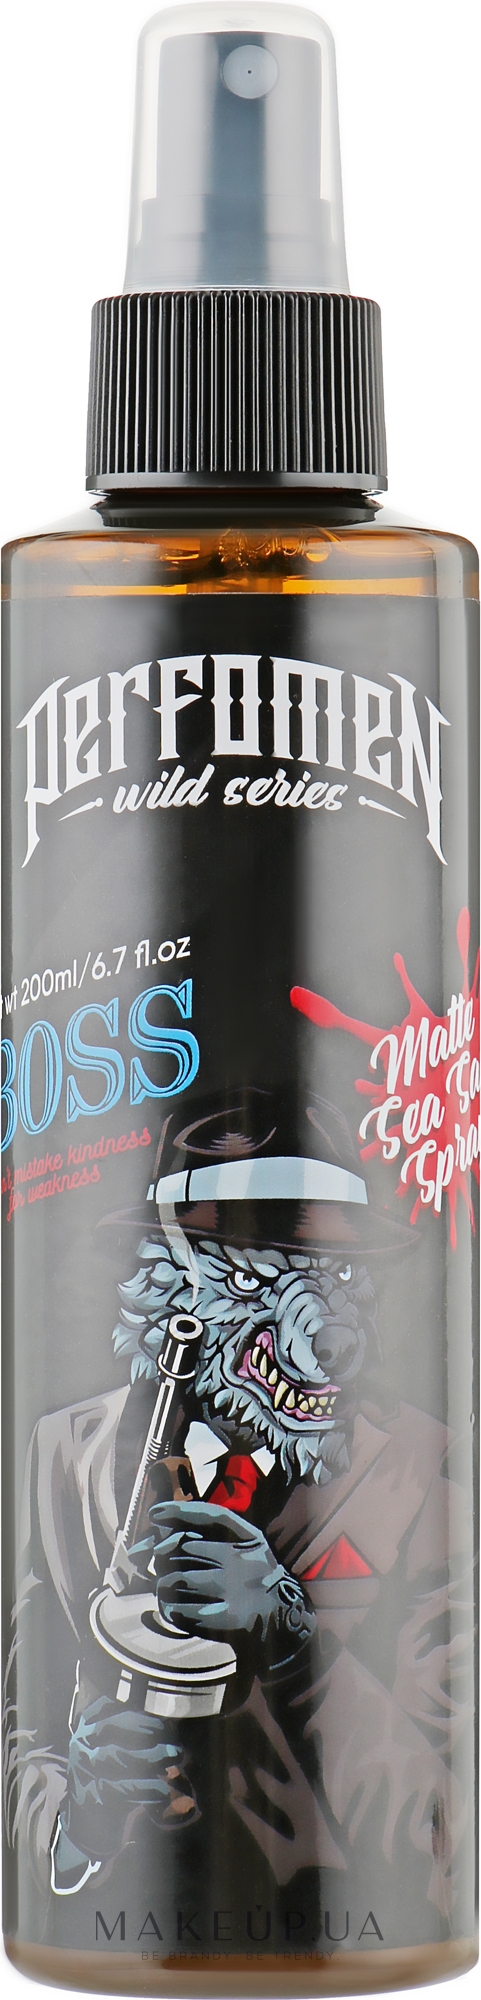 Матовий сольовий спрей для волосся - Perfomen Wild Series Boss Matte Sea Salt Spray — фото 200ml